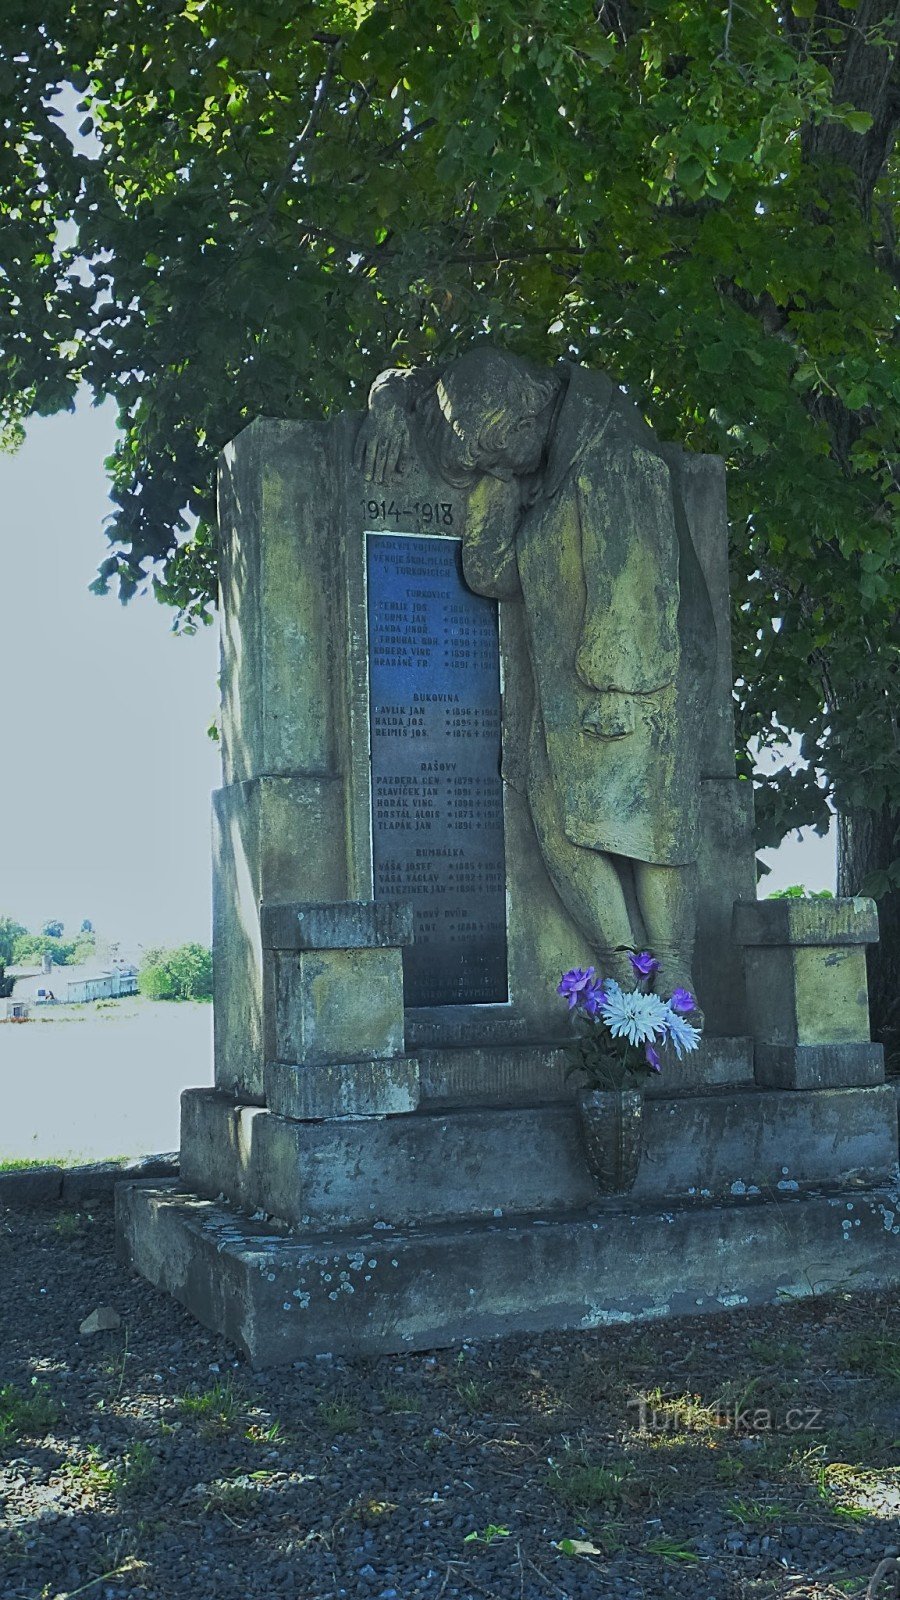 Na pomniku wyryto 19 nazwisk poległych żołnierzy z okolicznych wsi